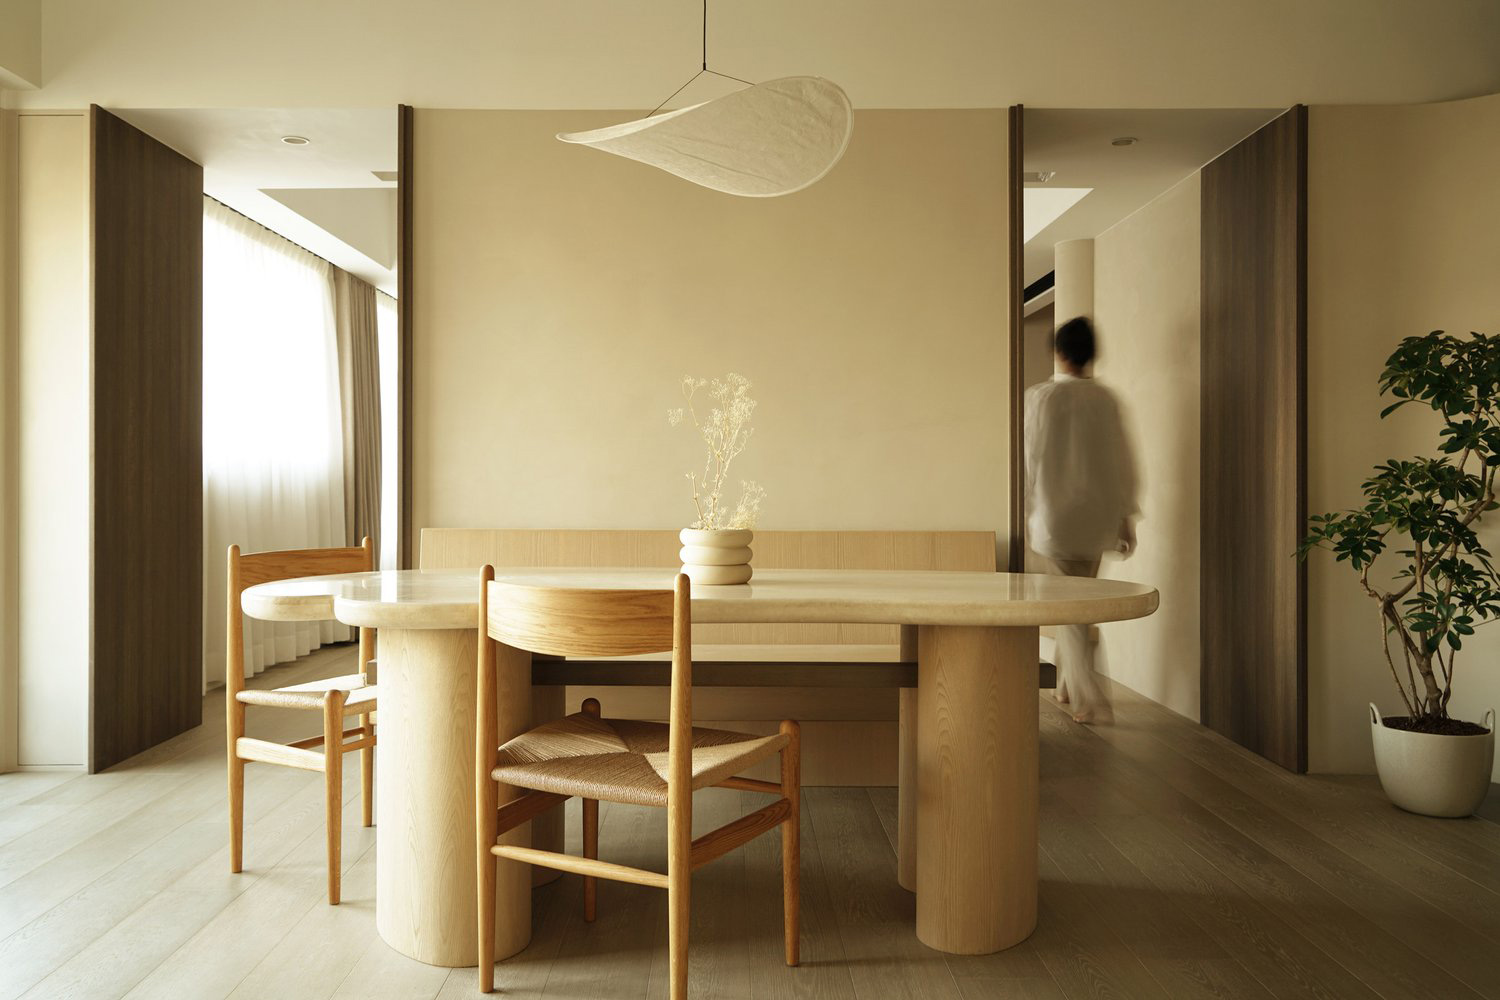 JAAK,香港,公寓設計,家裝設計,公寓設計案例,原木色,75㎡,侘寂風格,單身公寓,Wabi-sabi